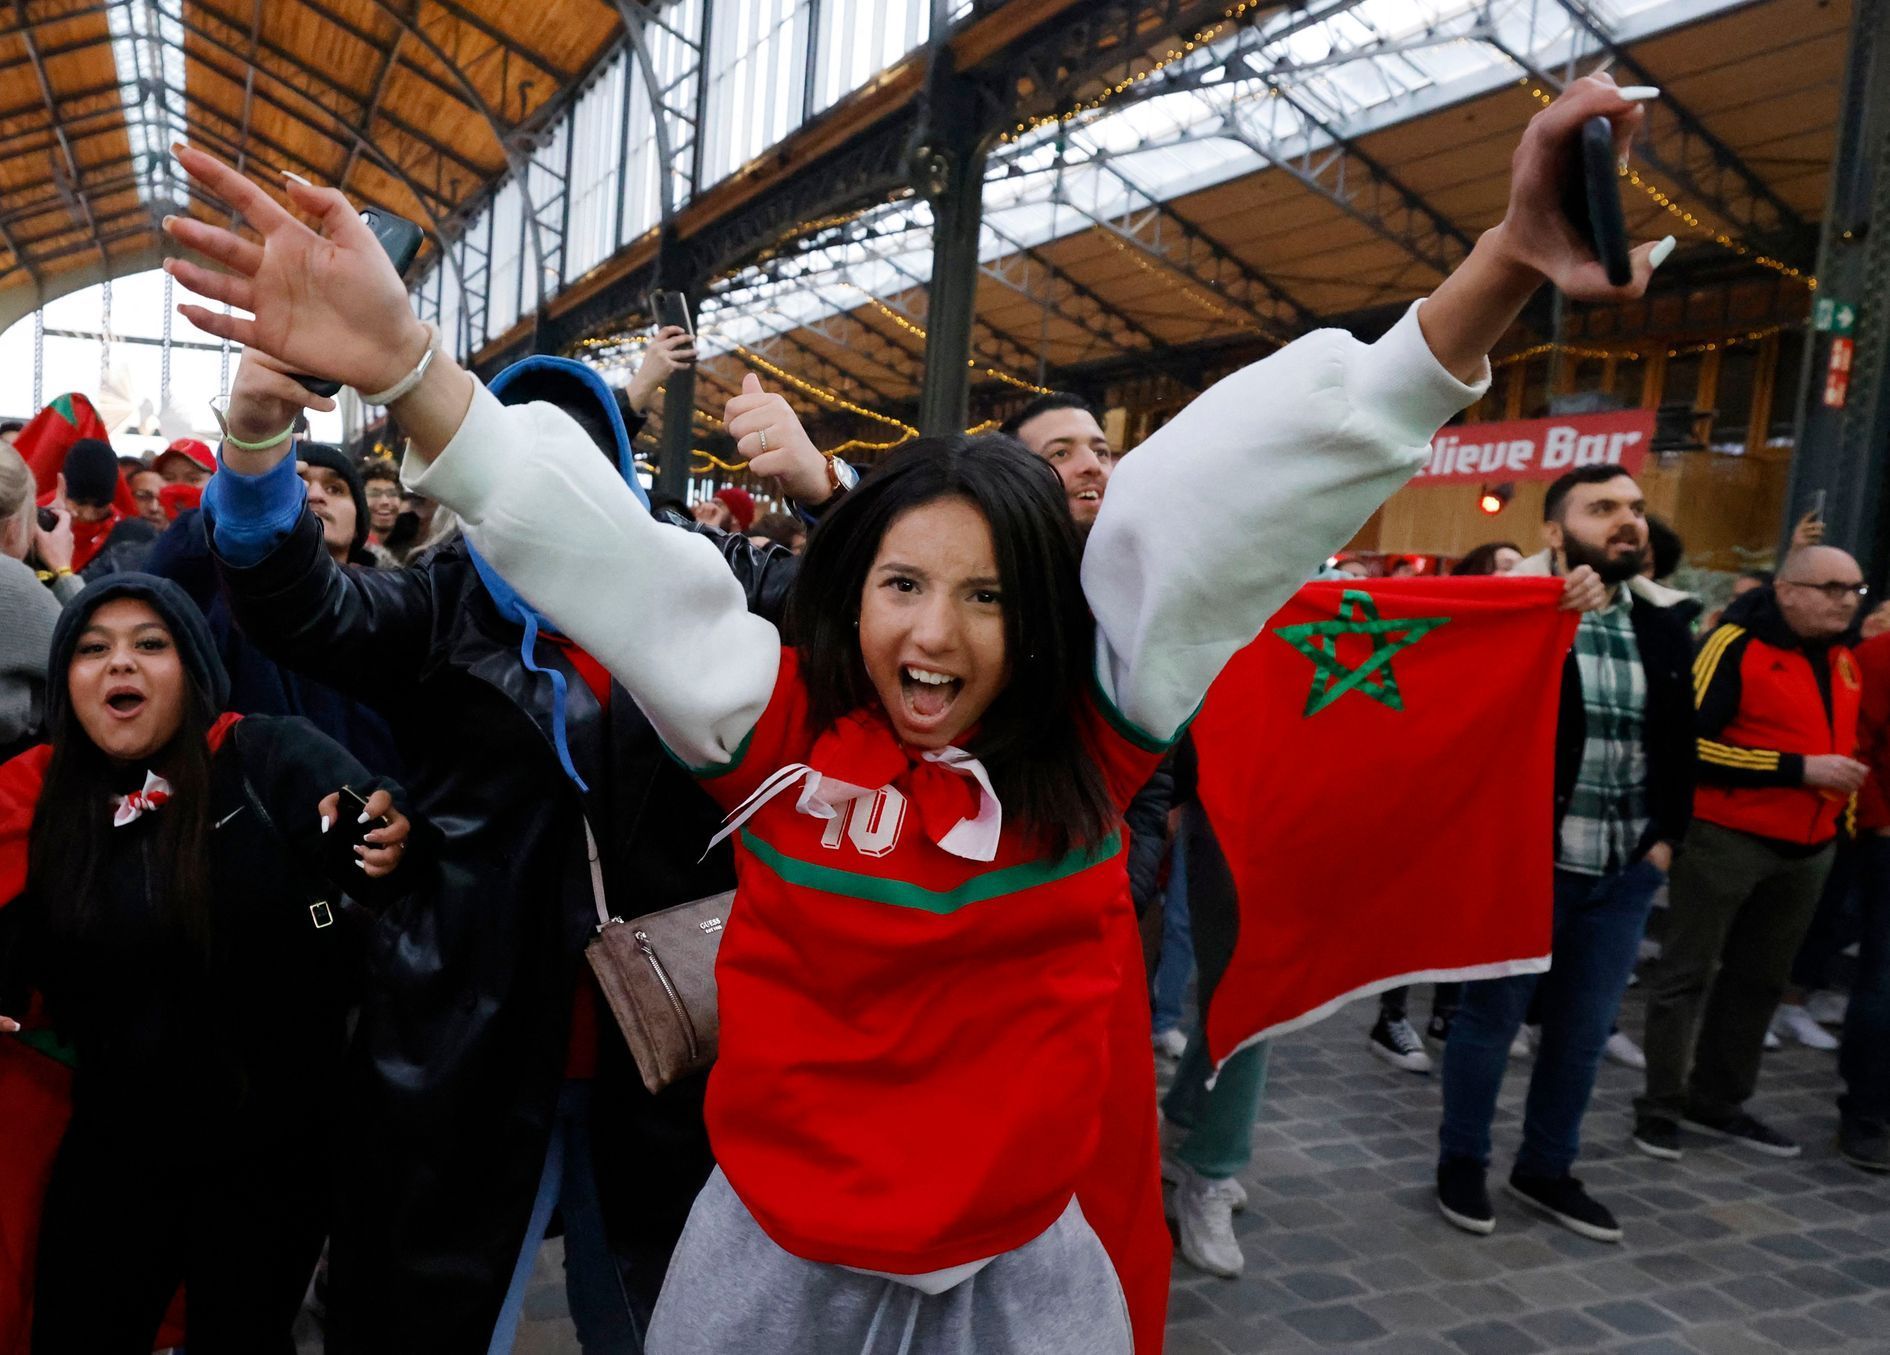 Nepokoje v Bruselu po zápase Belgie - Maroko